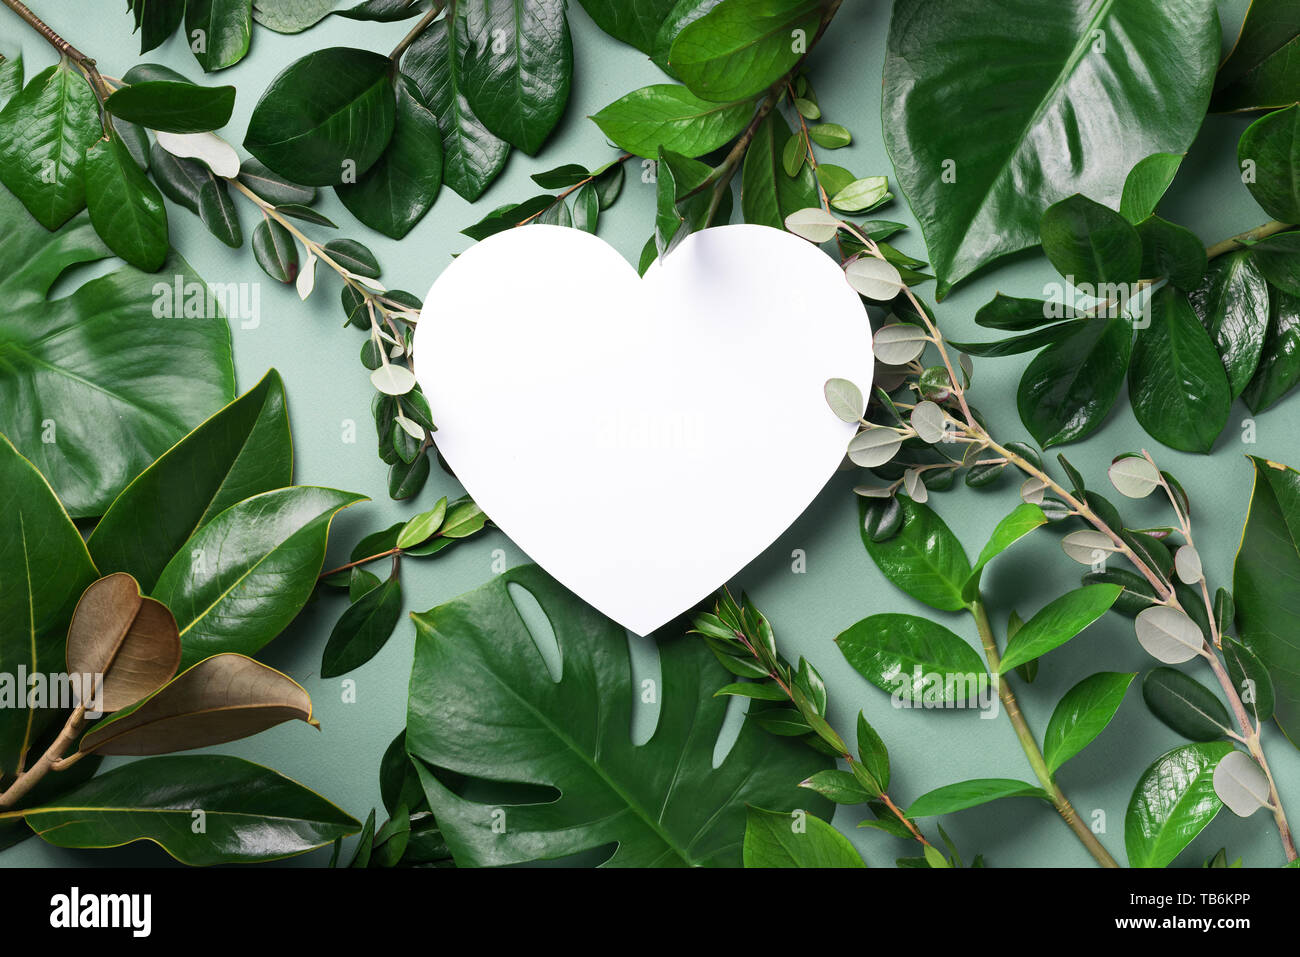 heart nature wallpaper